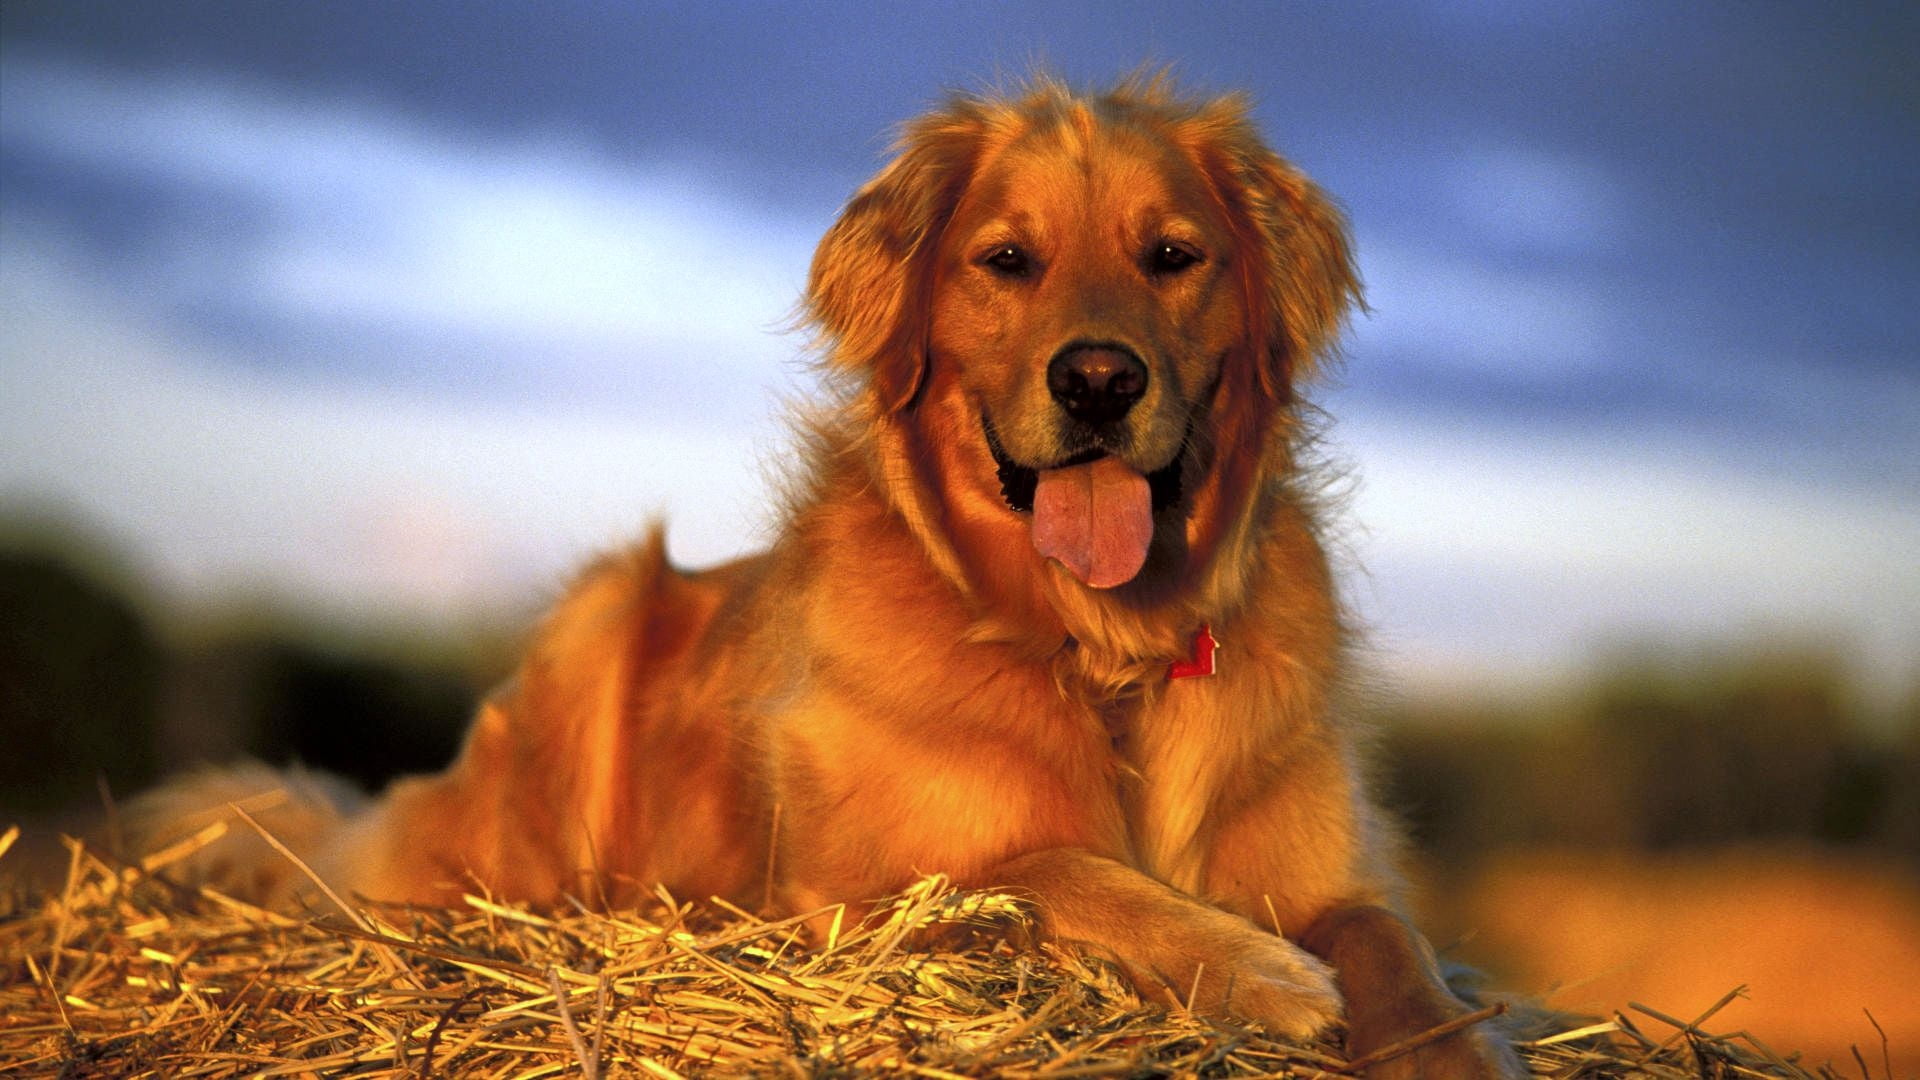 adult golden retriever, dog, labrador, lie, pets, animal, cute